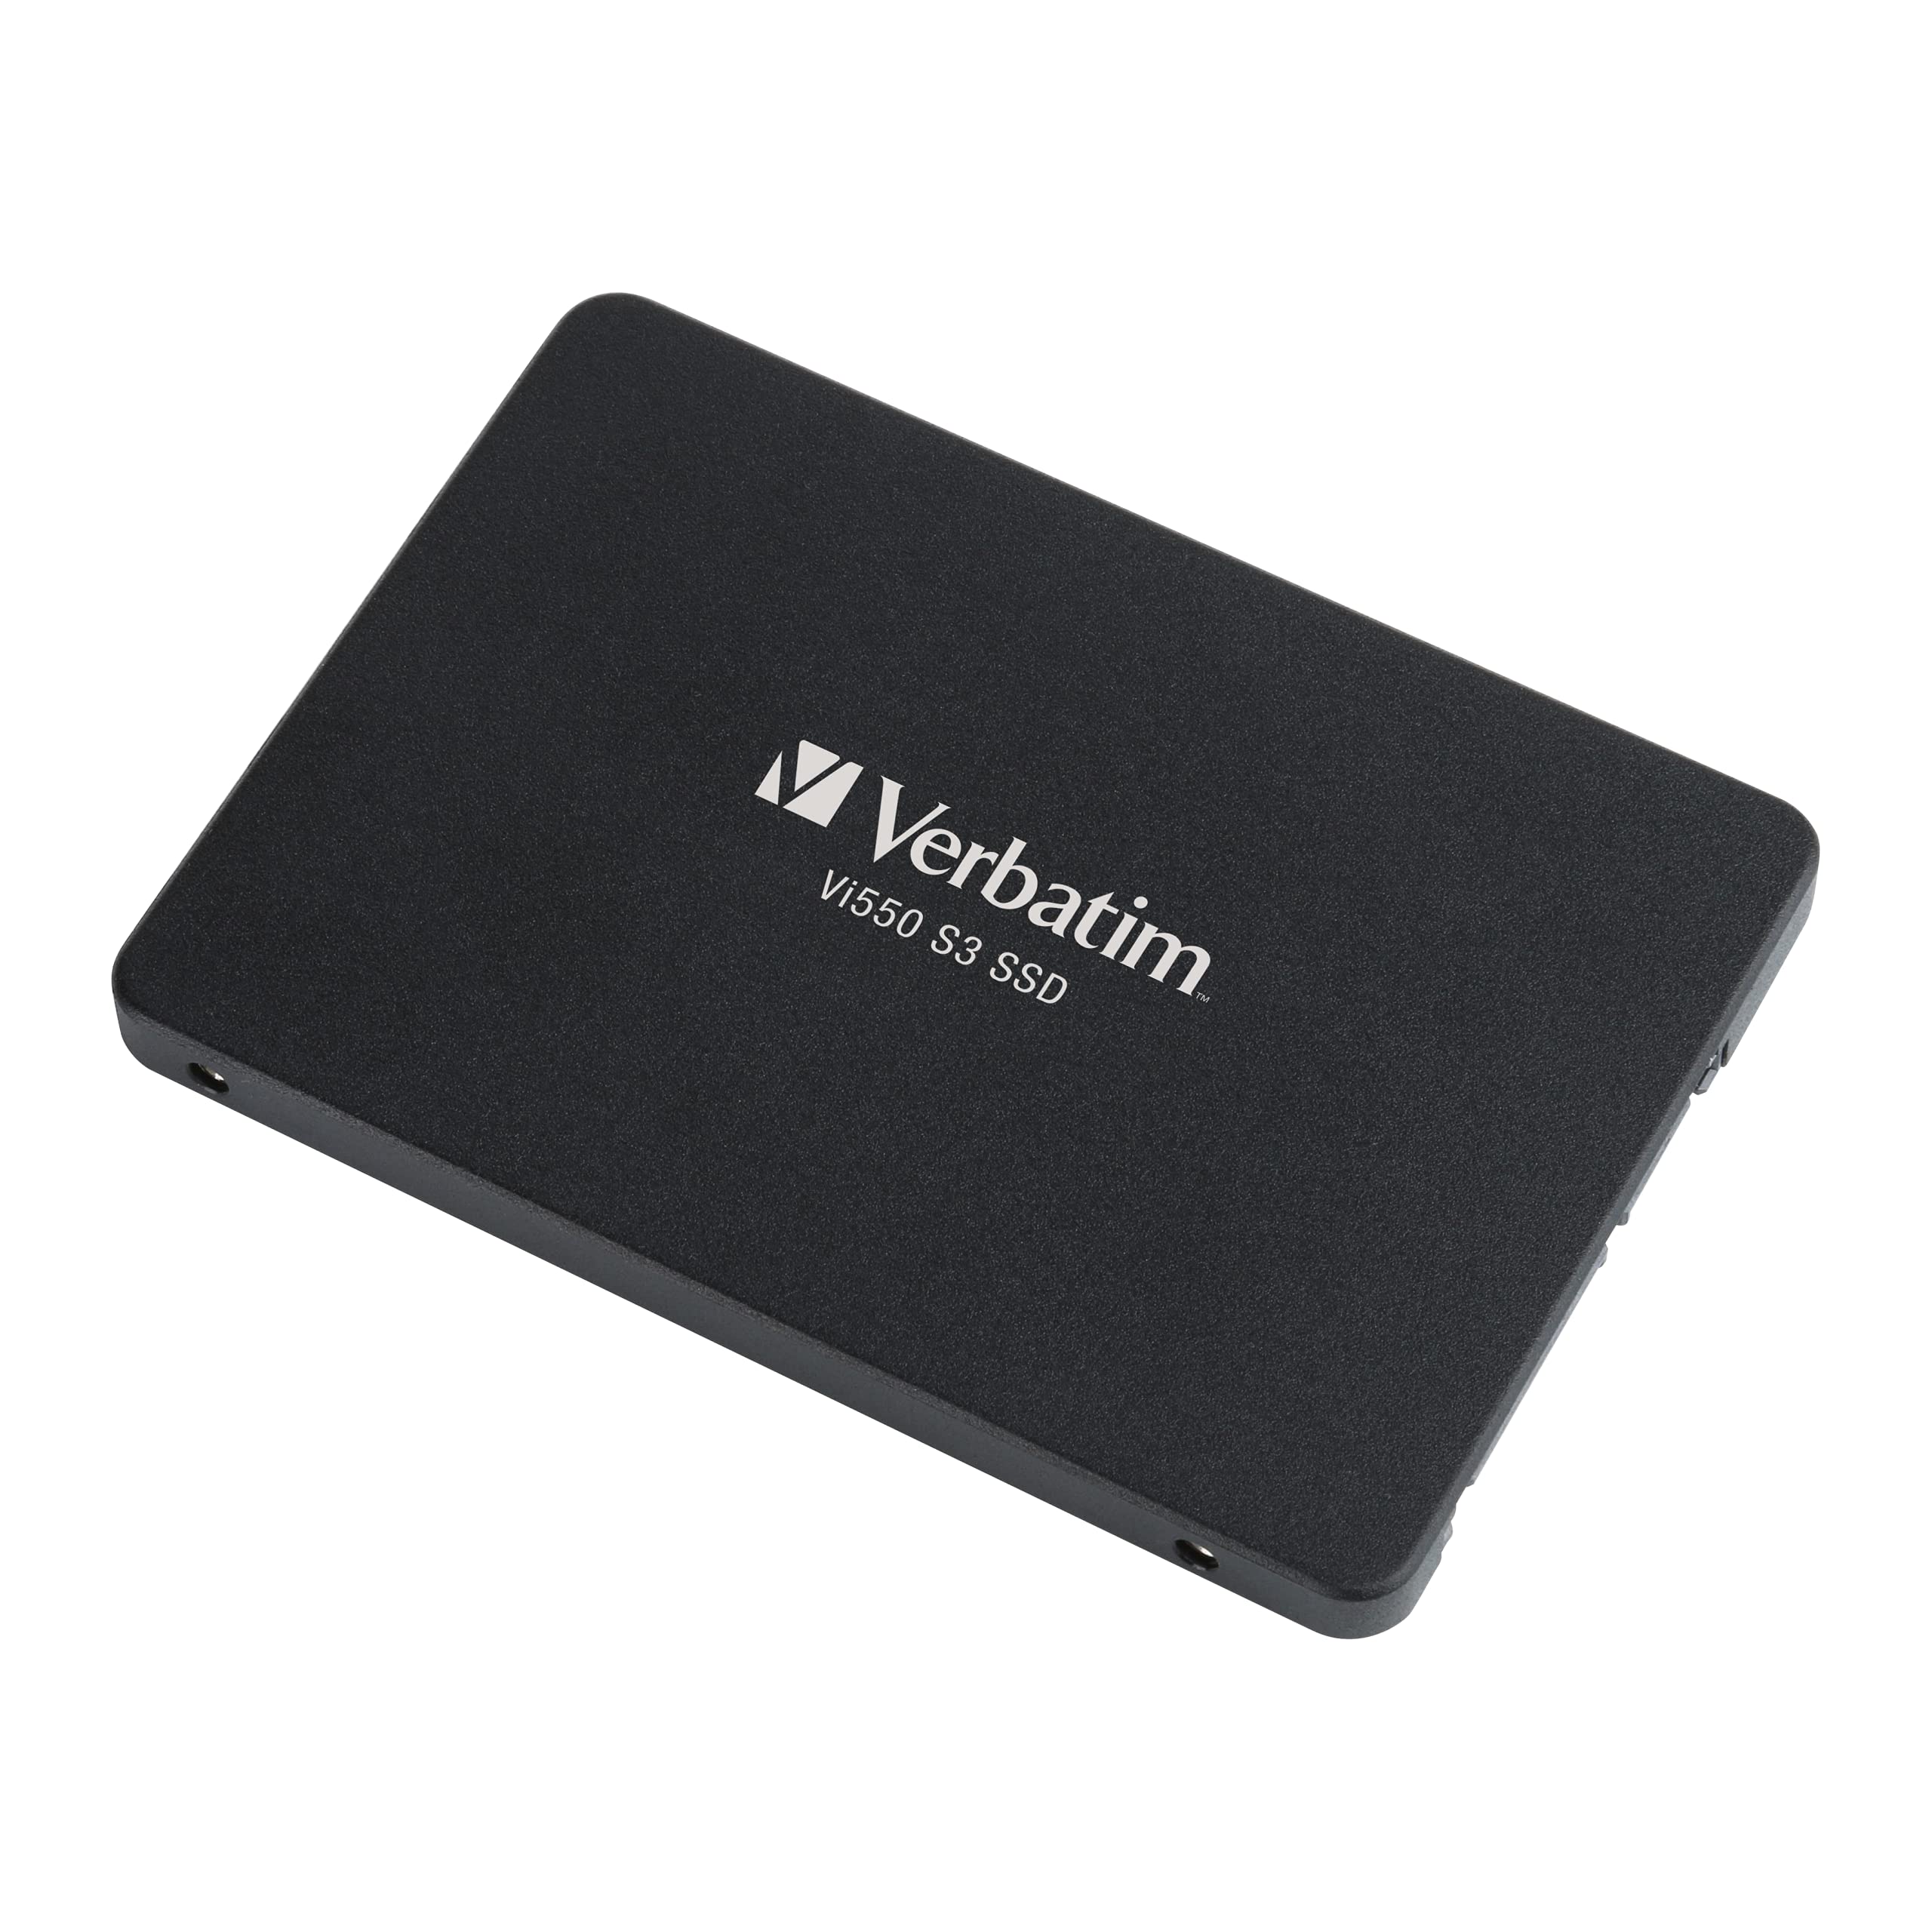 Verbatim 128GB Vi550 SATA III 2.5 Internal SSD